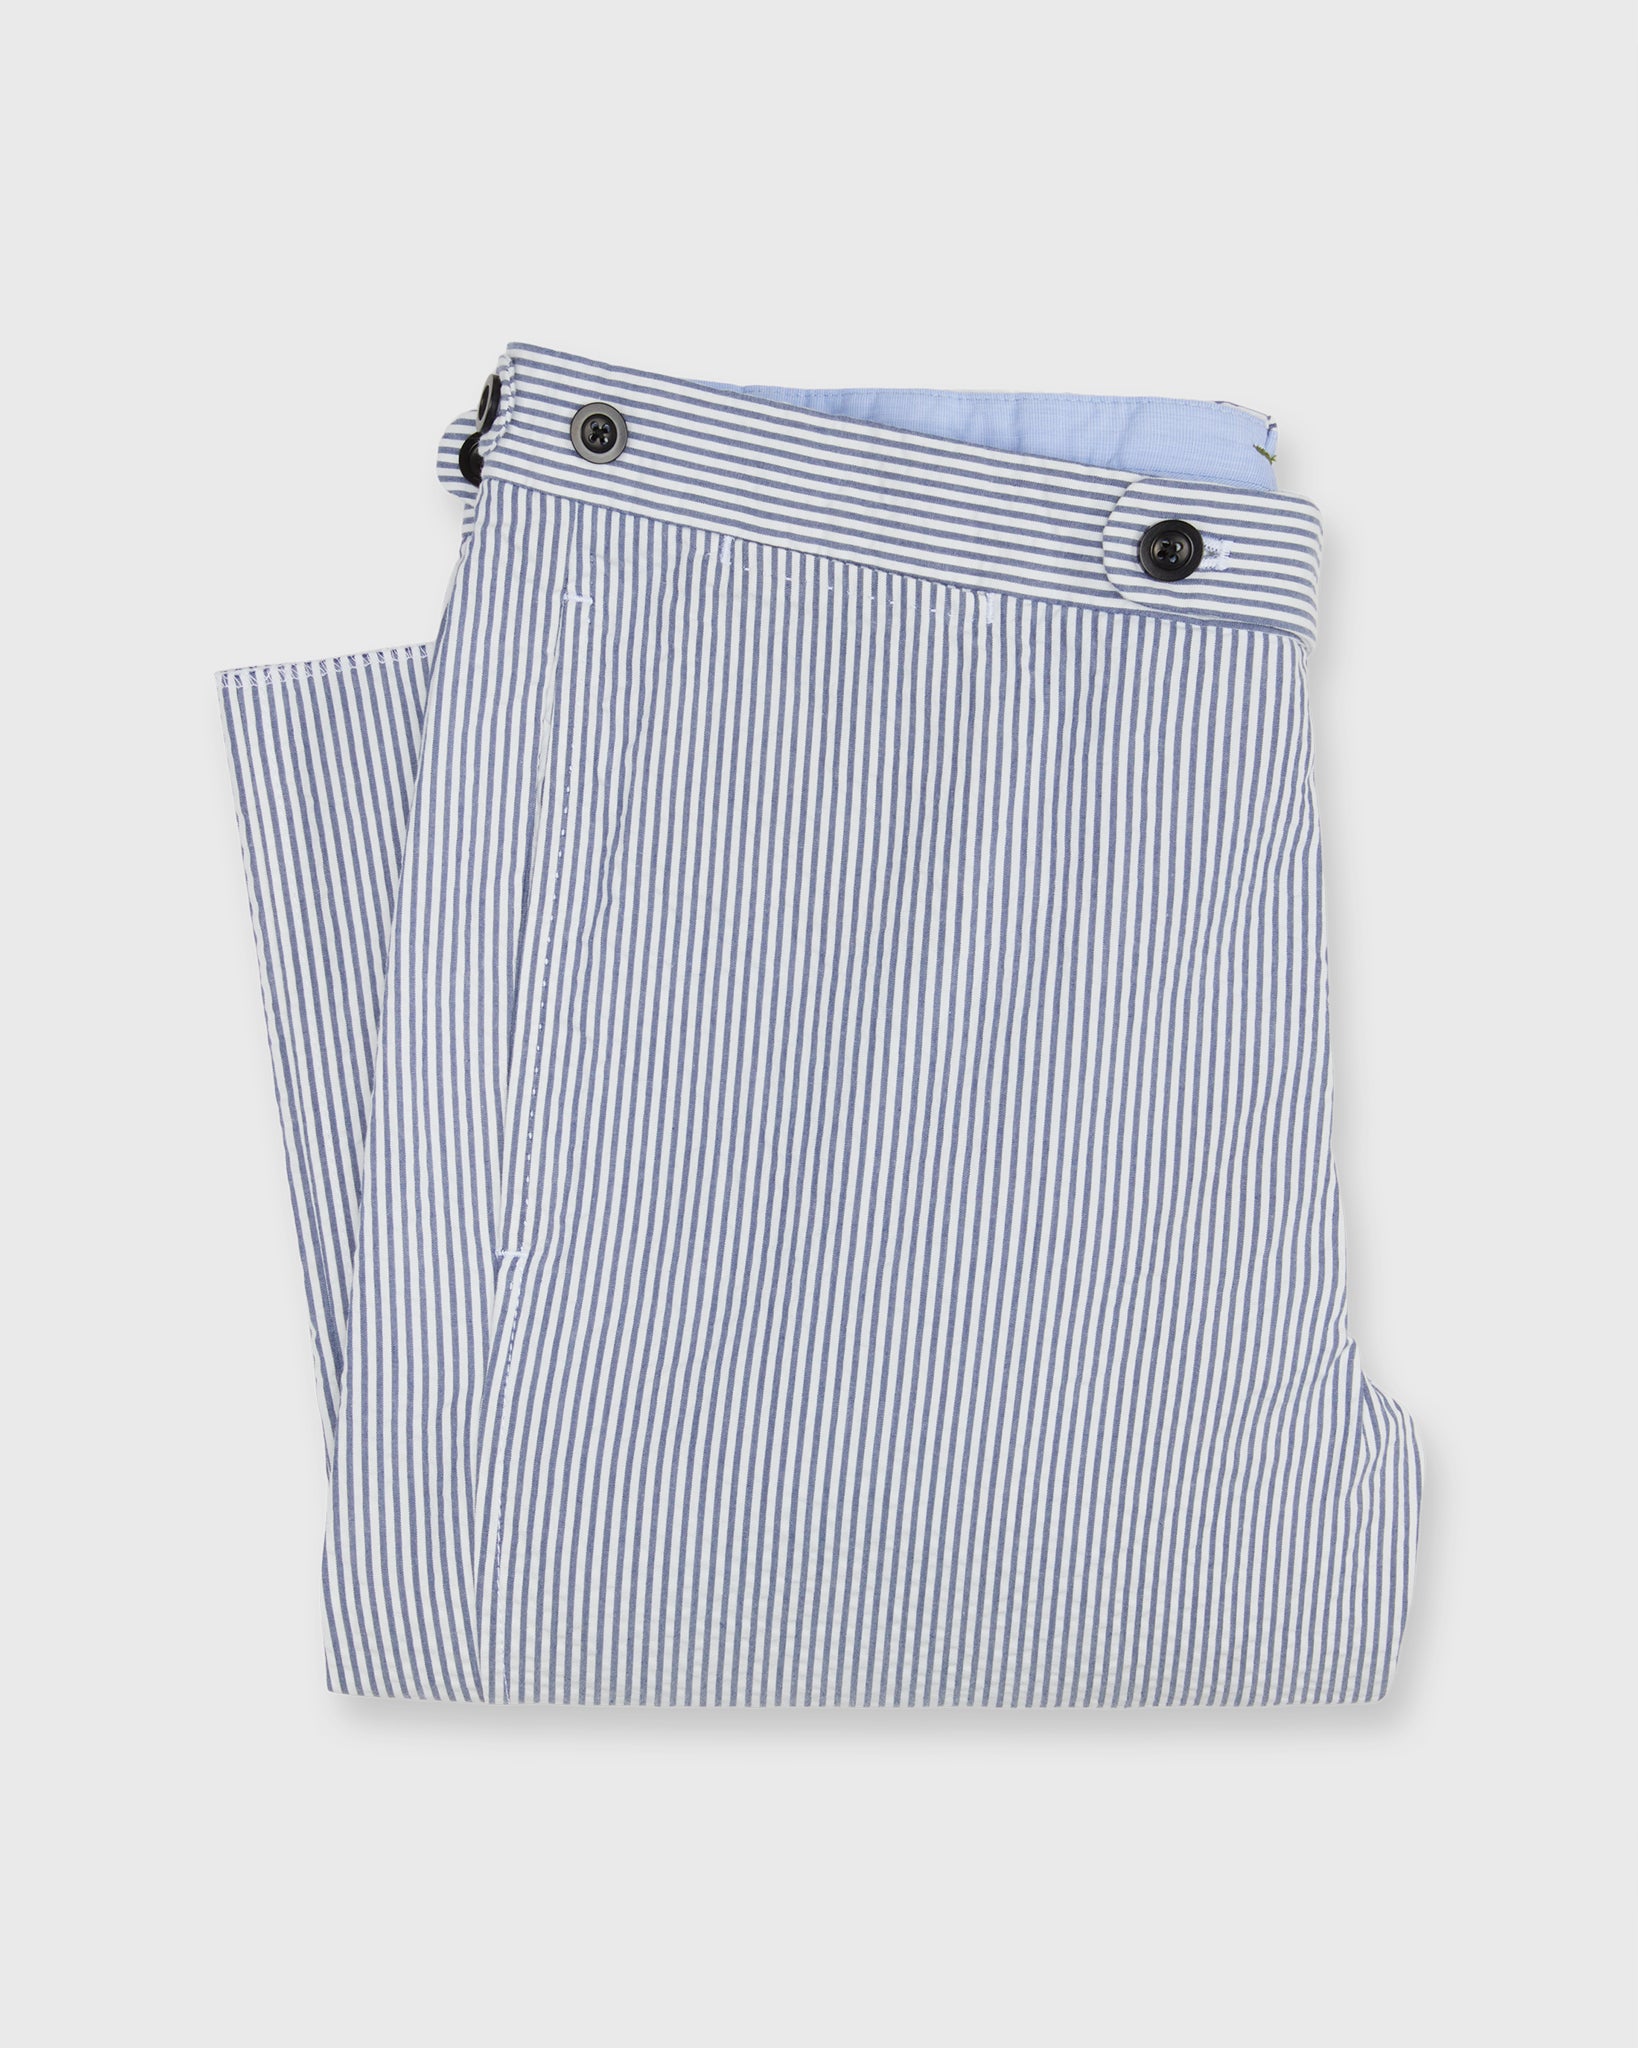 Side-Tab Sport Trouser in Blue/White Seersucker